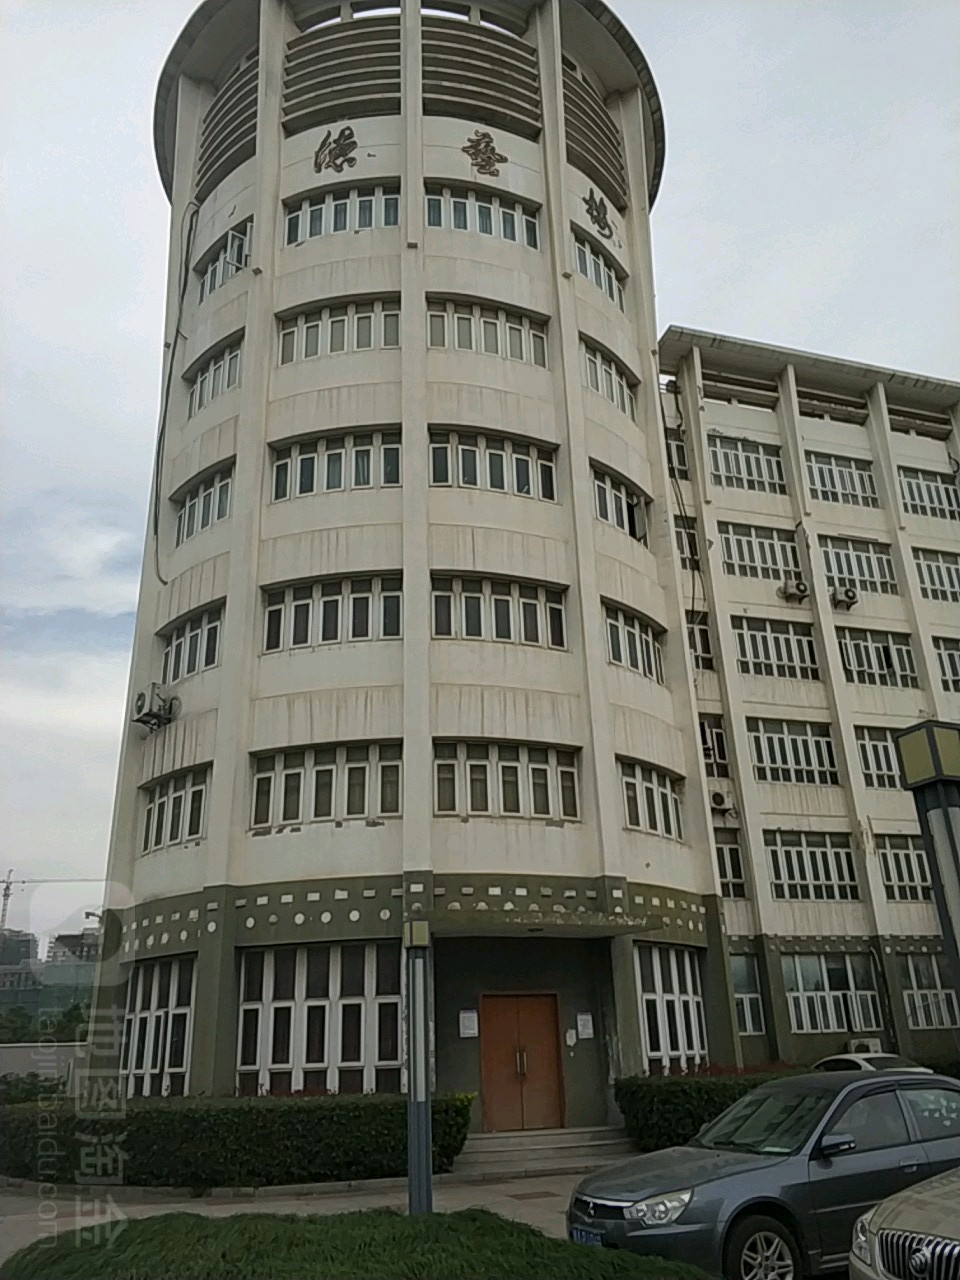 上海邦德职业技术学院德艺楼